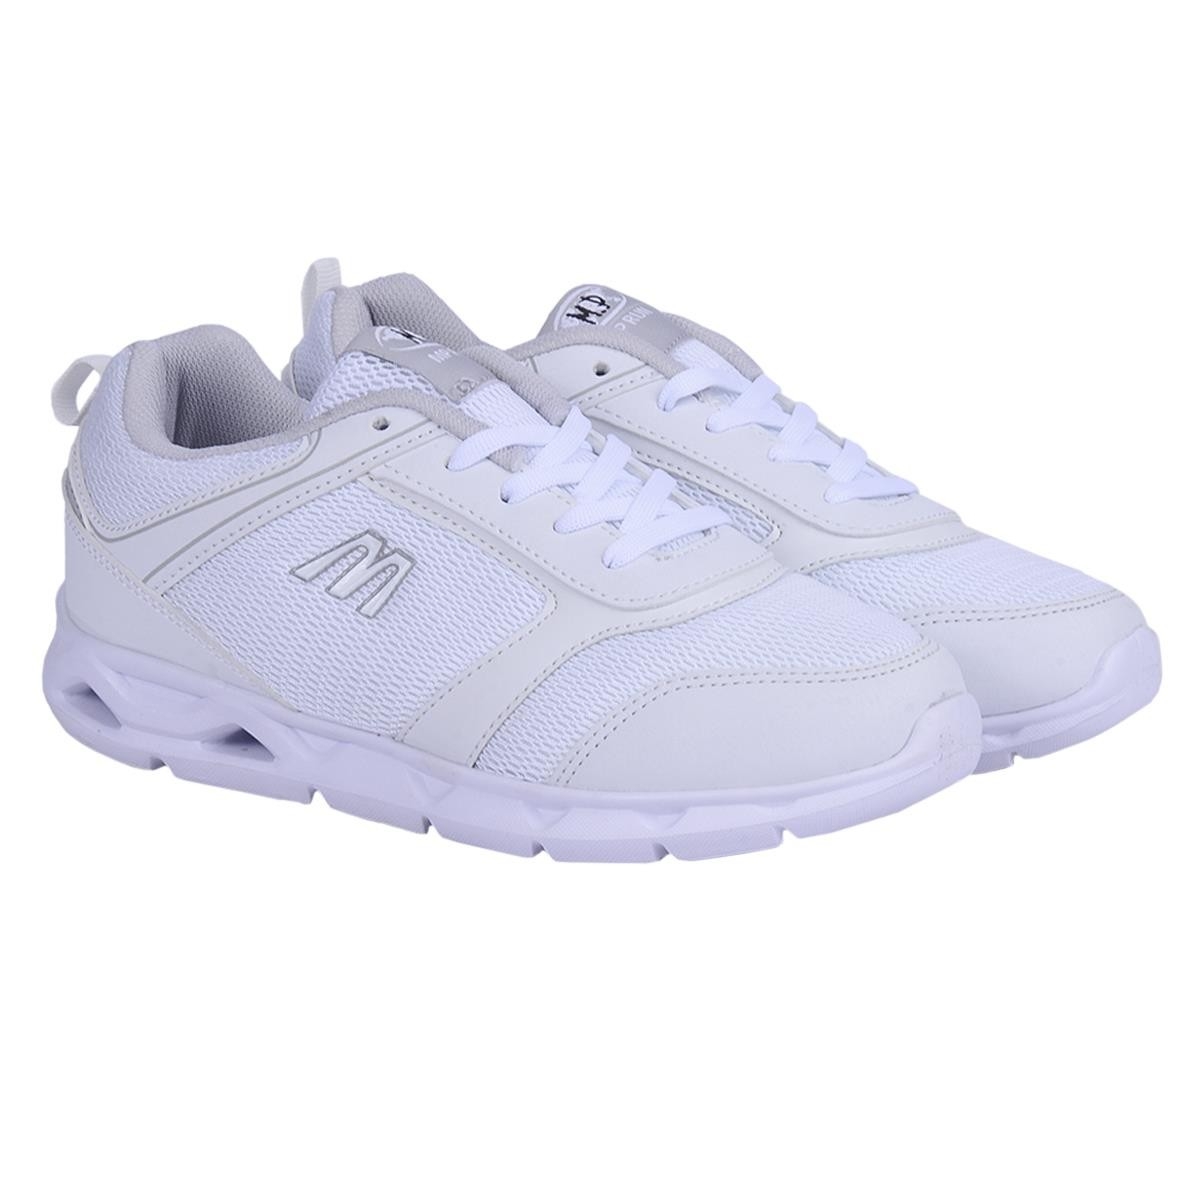 Flo 201-7404 Beyaz Loyal Yazlık Yürüyüş Koşu Bayan Spor Ayakkabı. 2